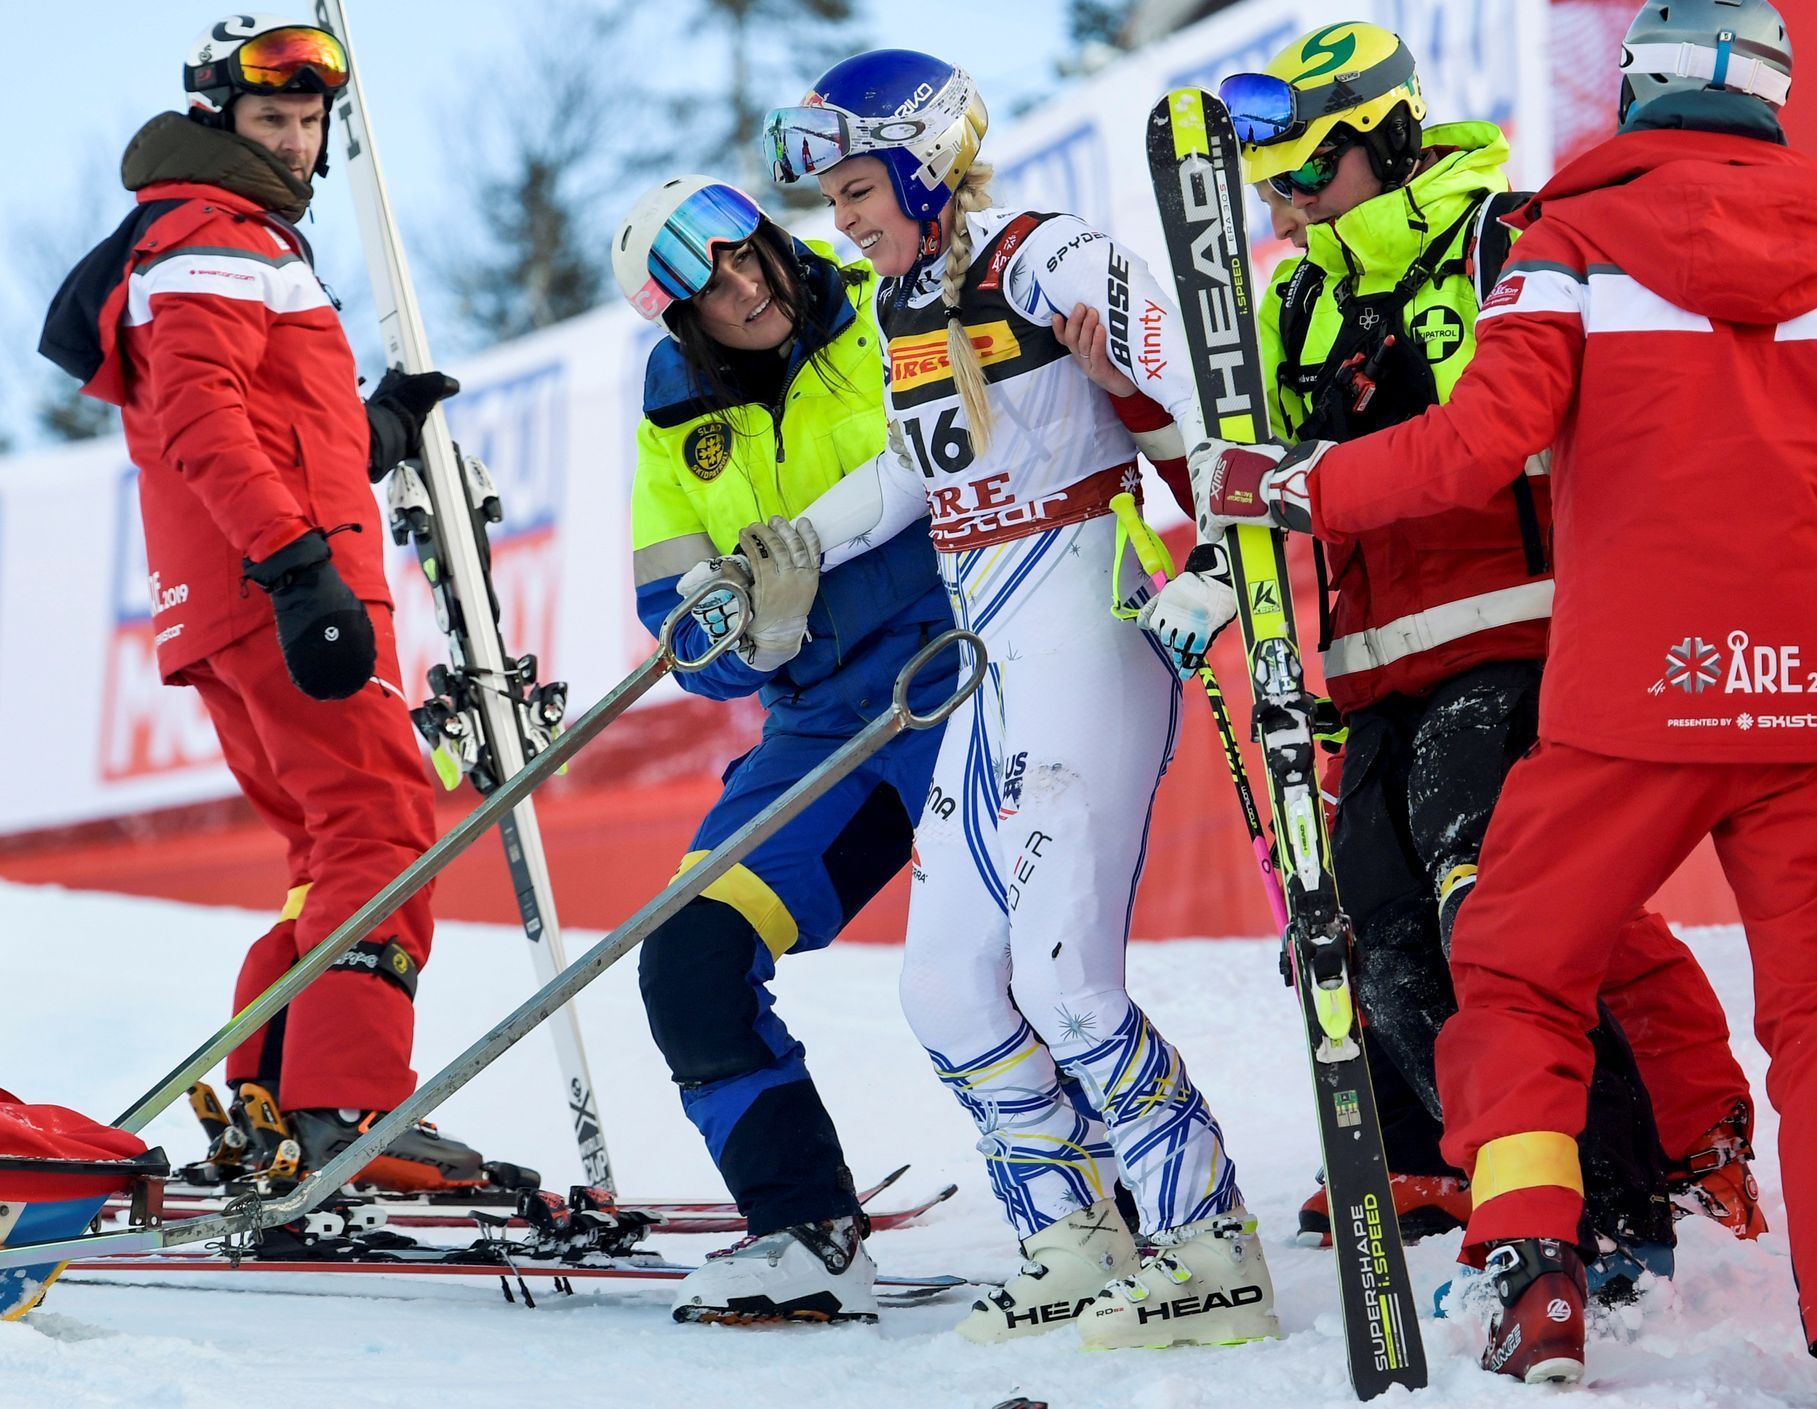 sjezdové lyžování, MS 2019 v Aare, Lindsey Vonnová po pádu v super-G